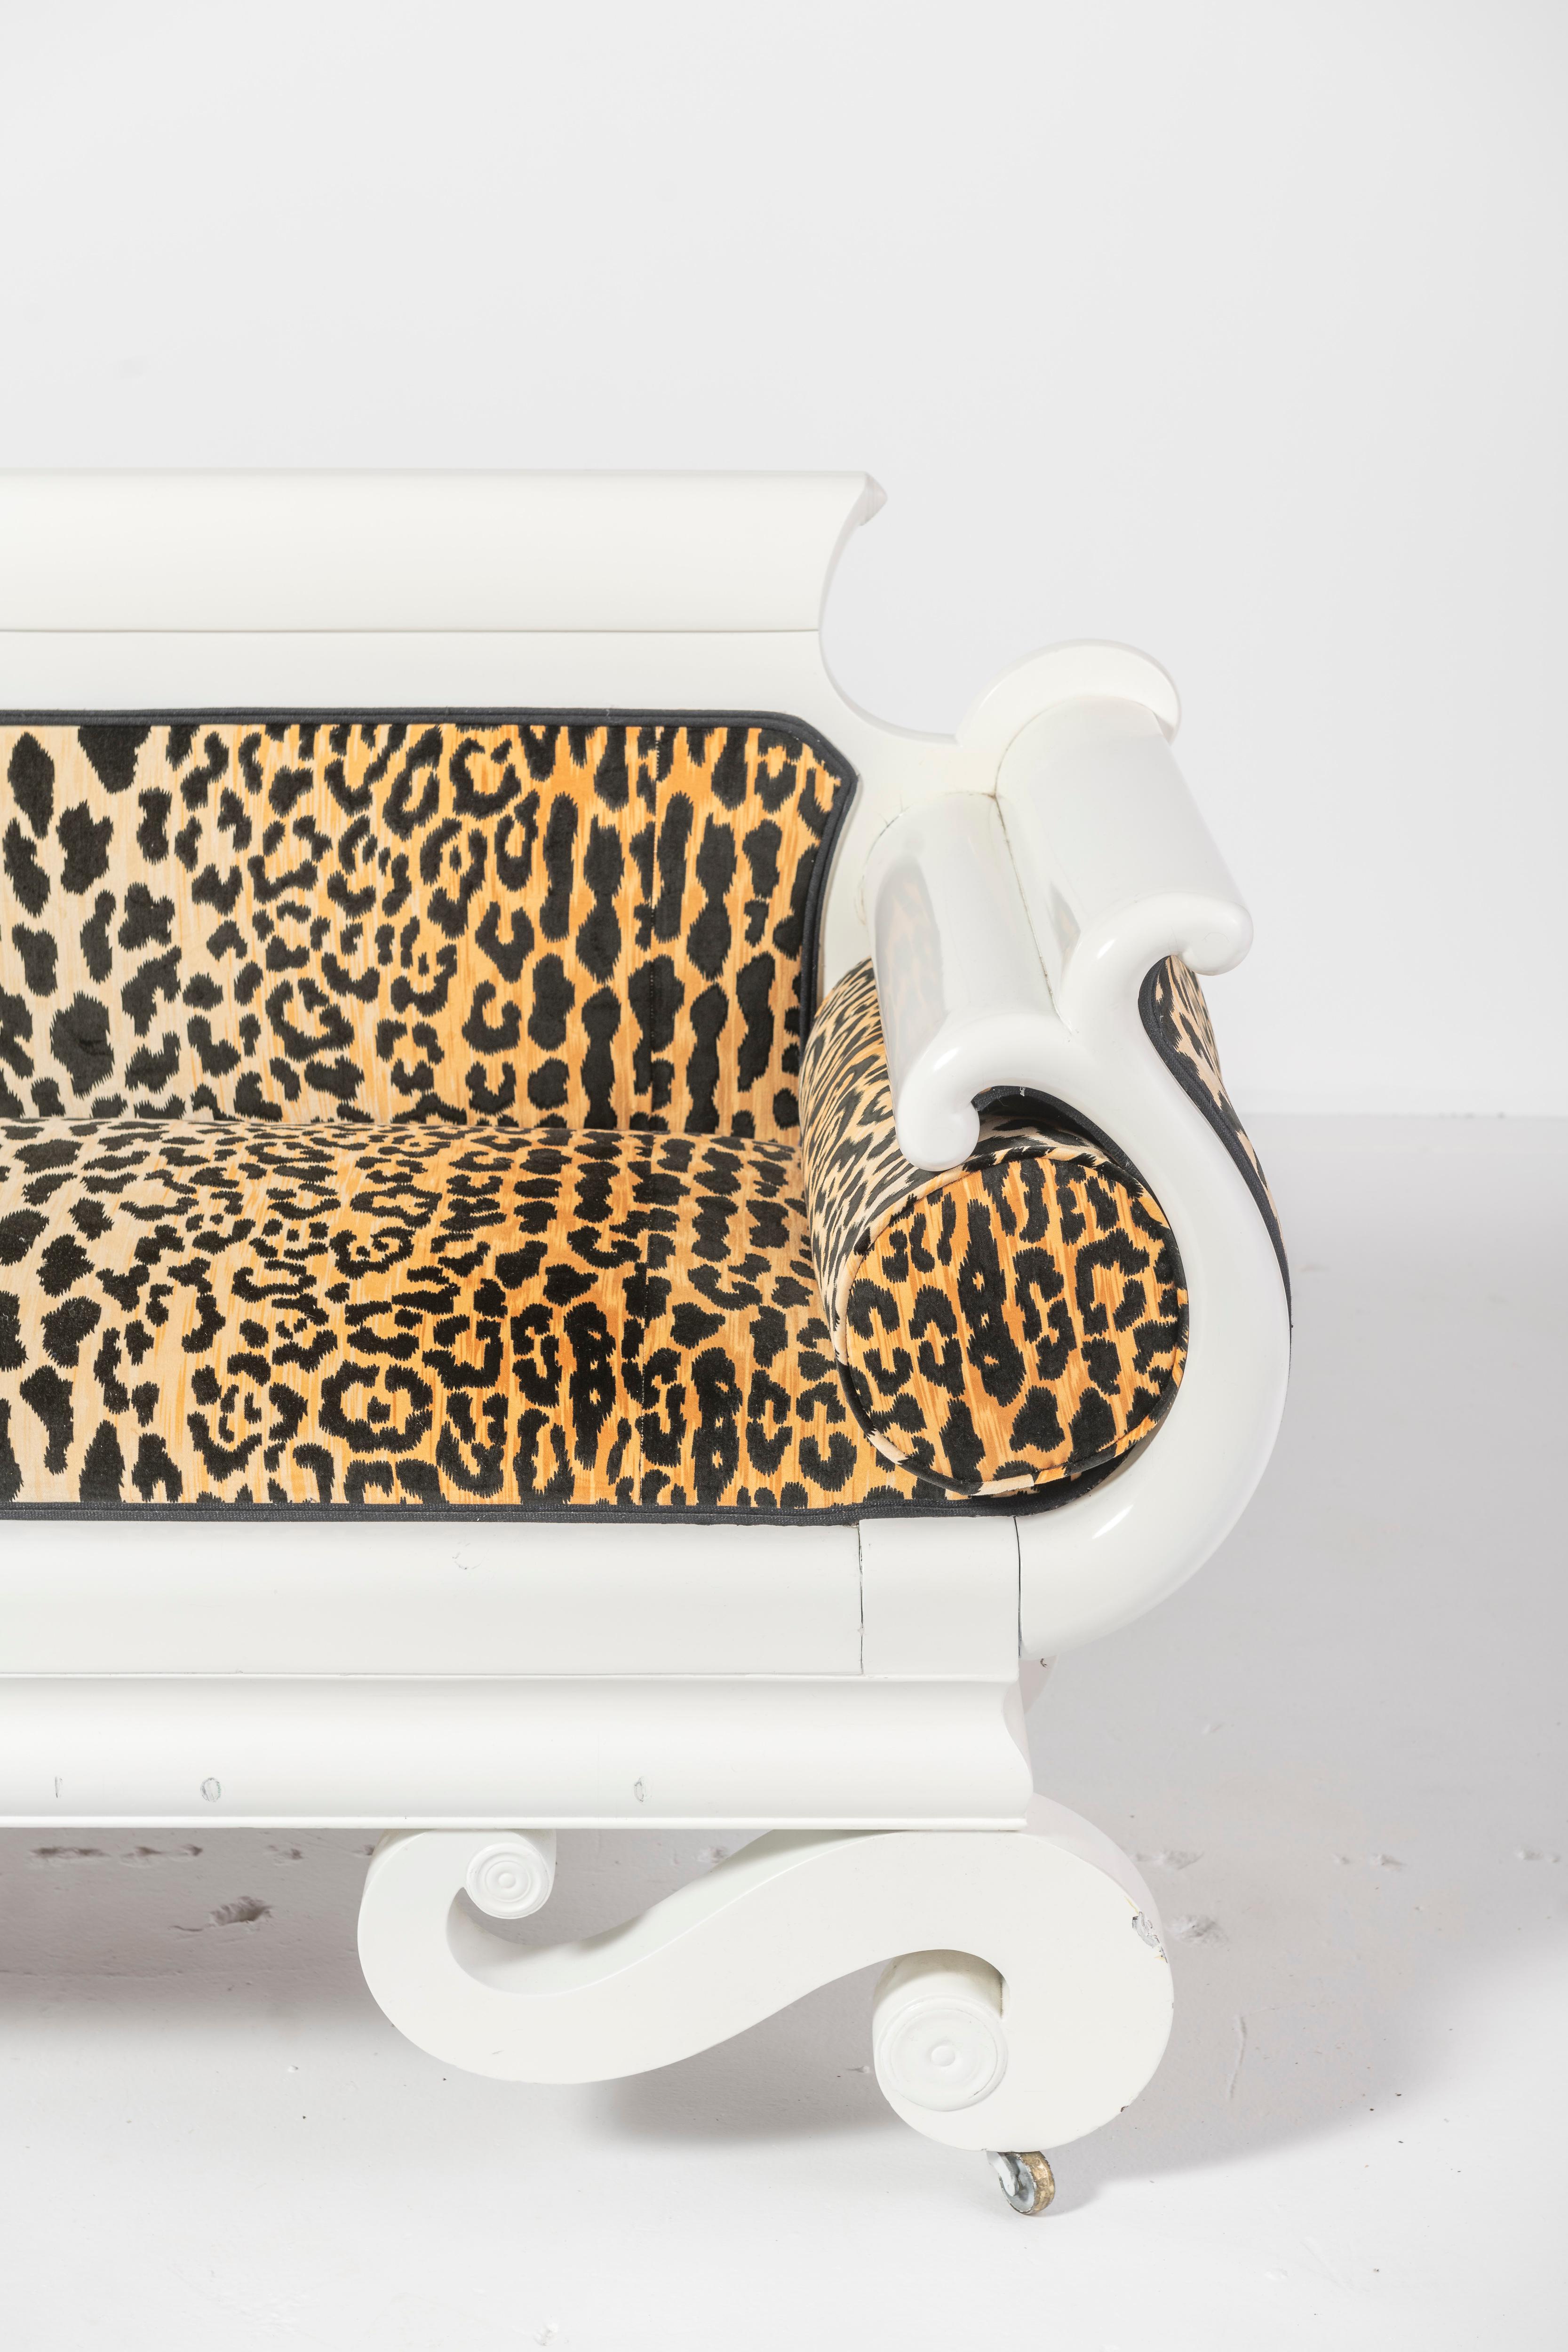 Américain Canapé laqué de style Empire avec tissu léopard en vente